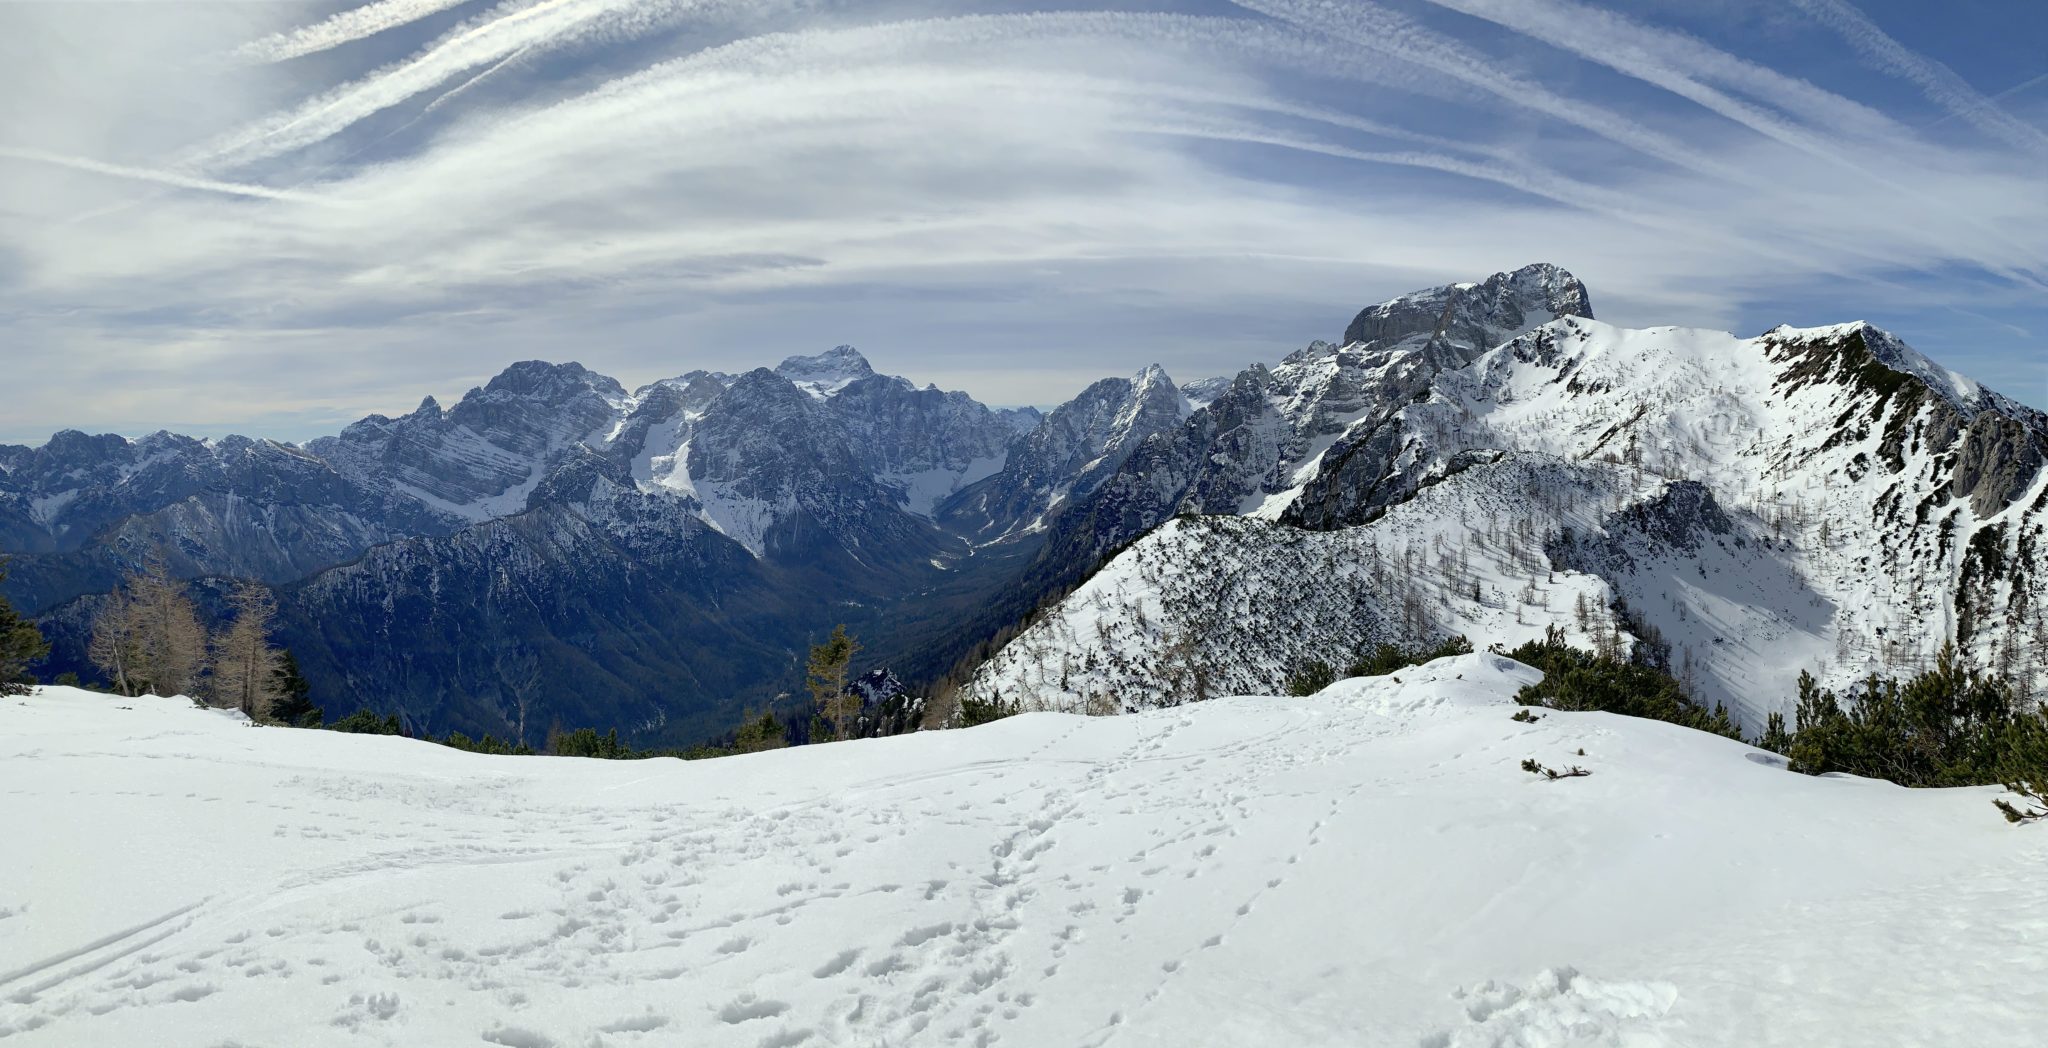 Cinematic views from the top of Vrtaški Vrh, Julian Alps, Slovenia